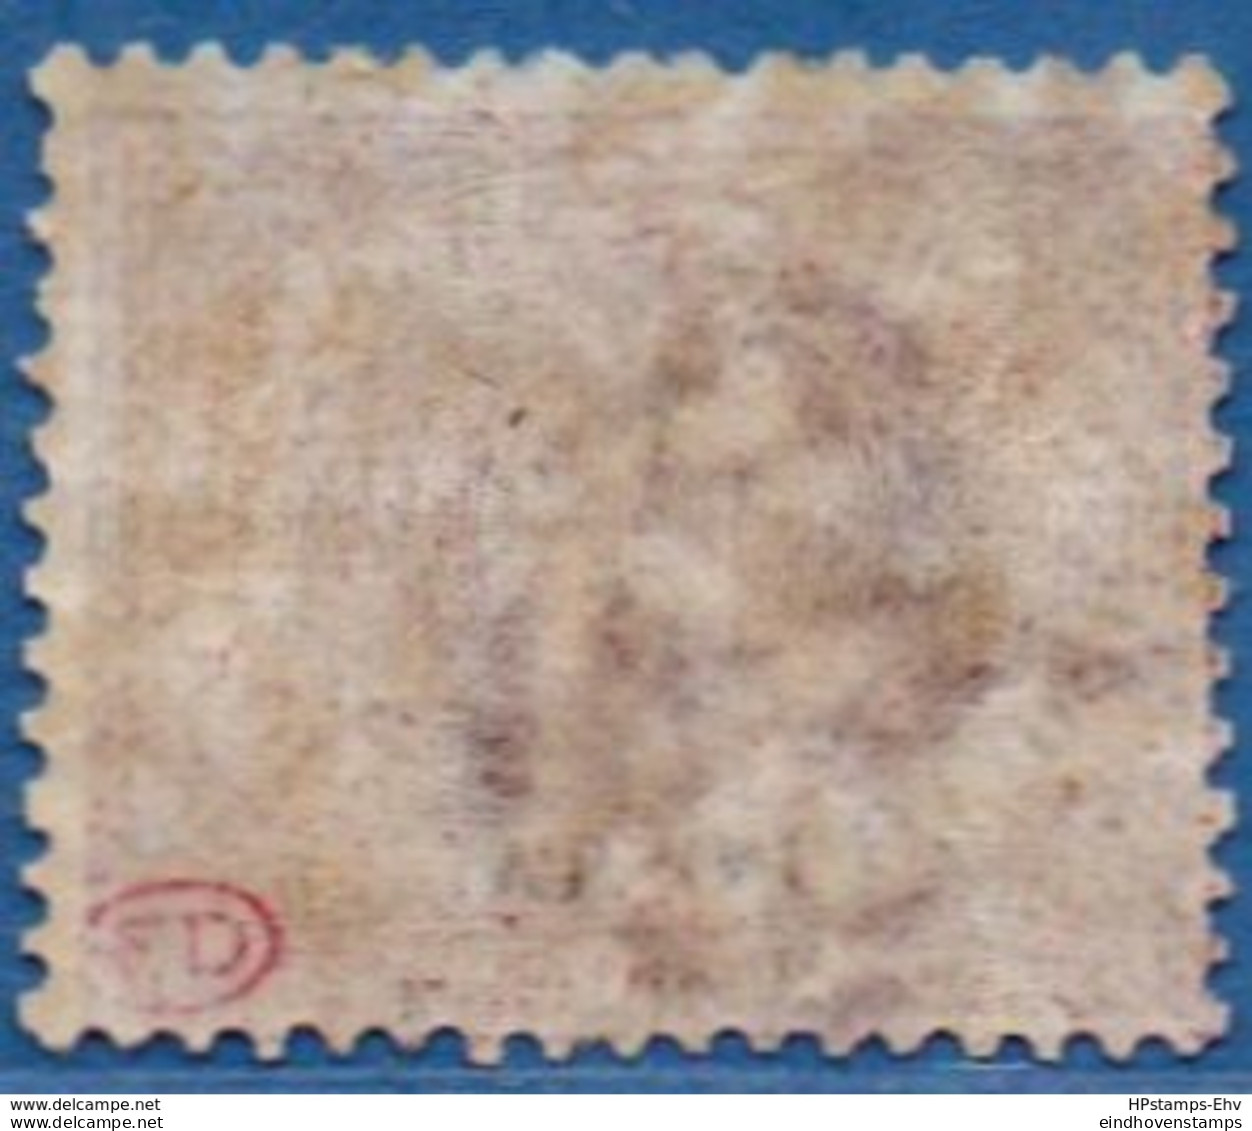 San Marino 1892 15c Dark Carmine Unused - 2005.2601 - Unused Stamps